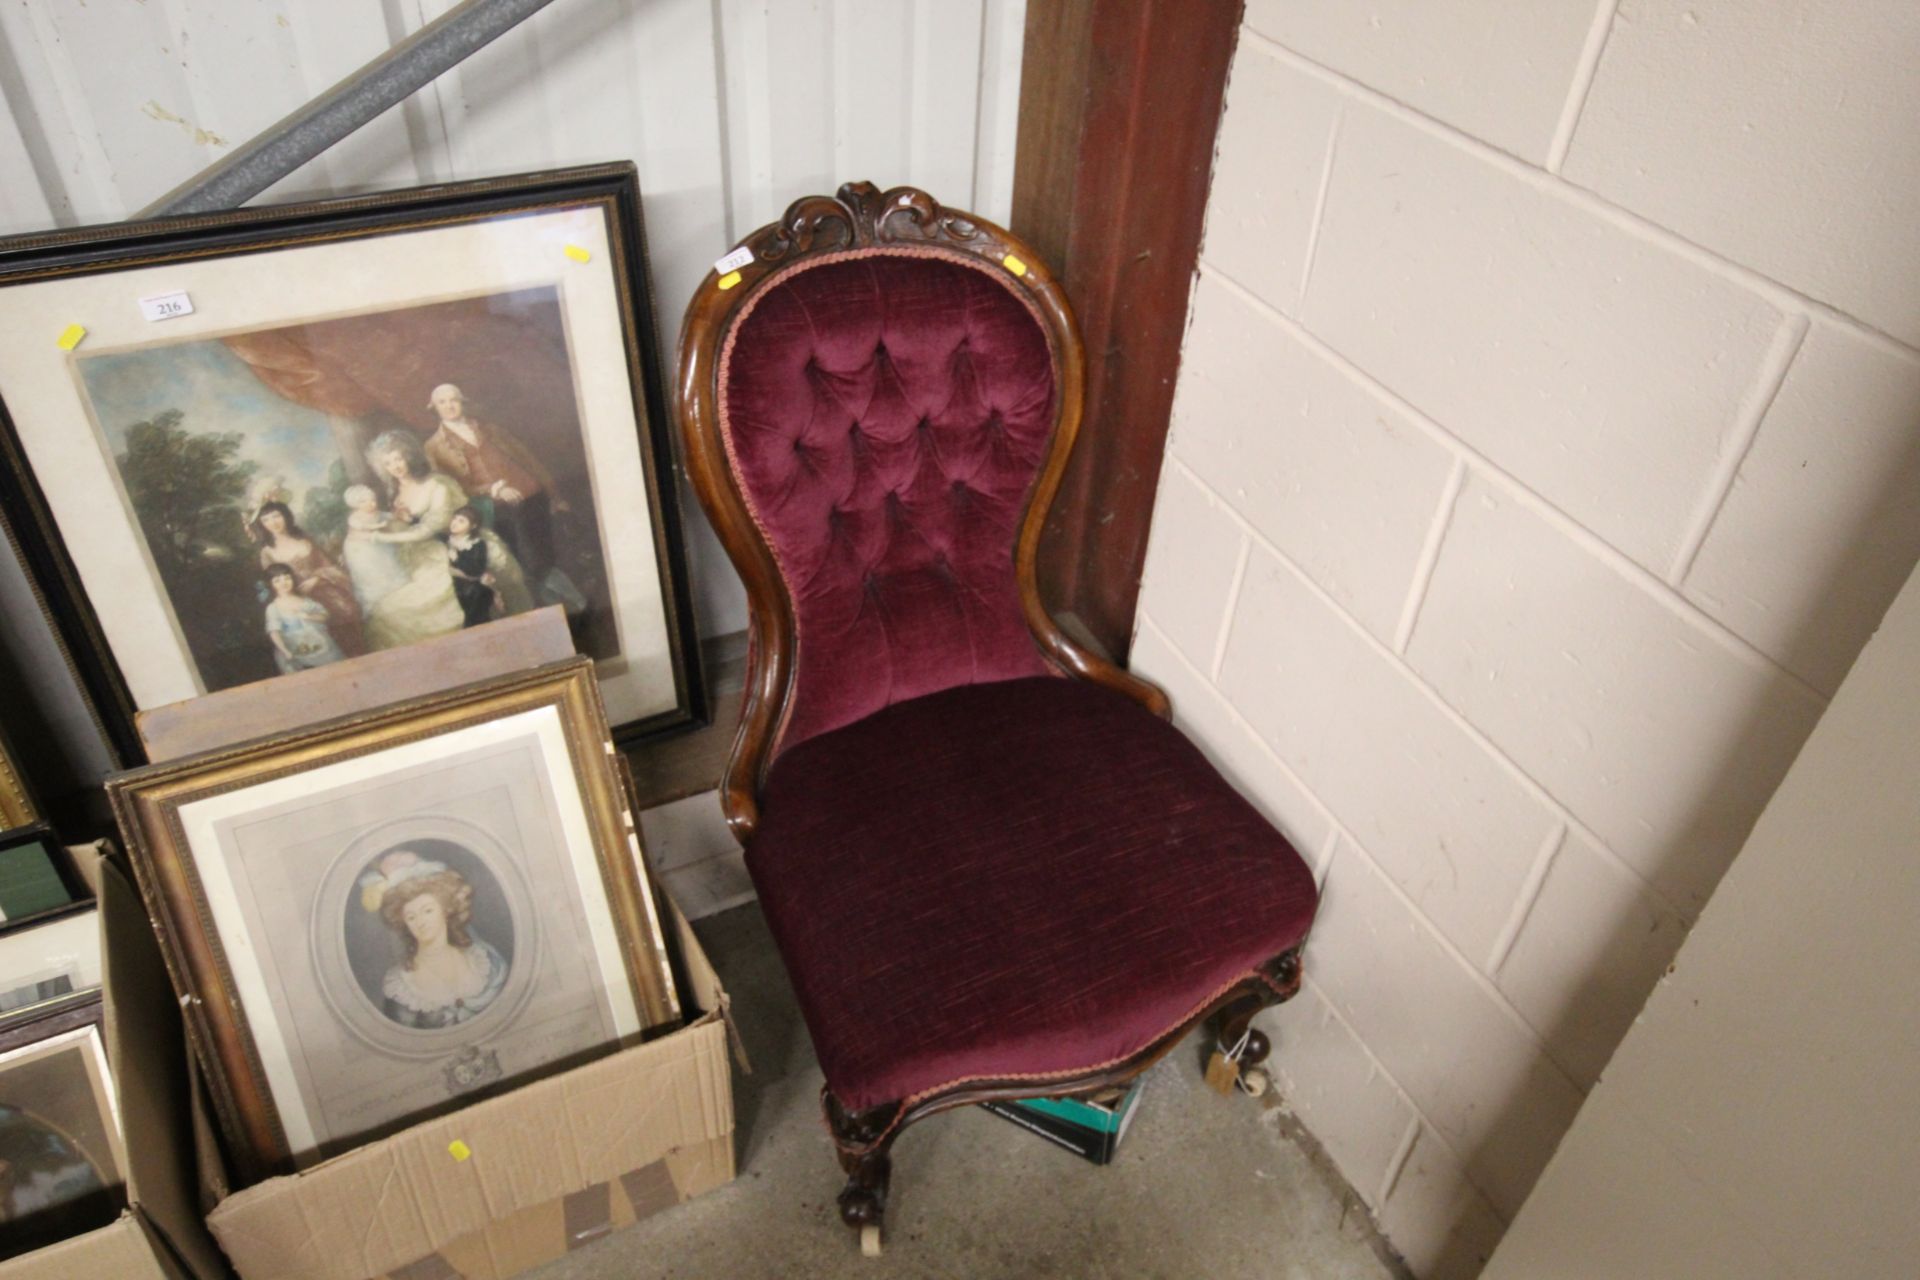 A Victorian mahogany framed nursing chair